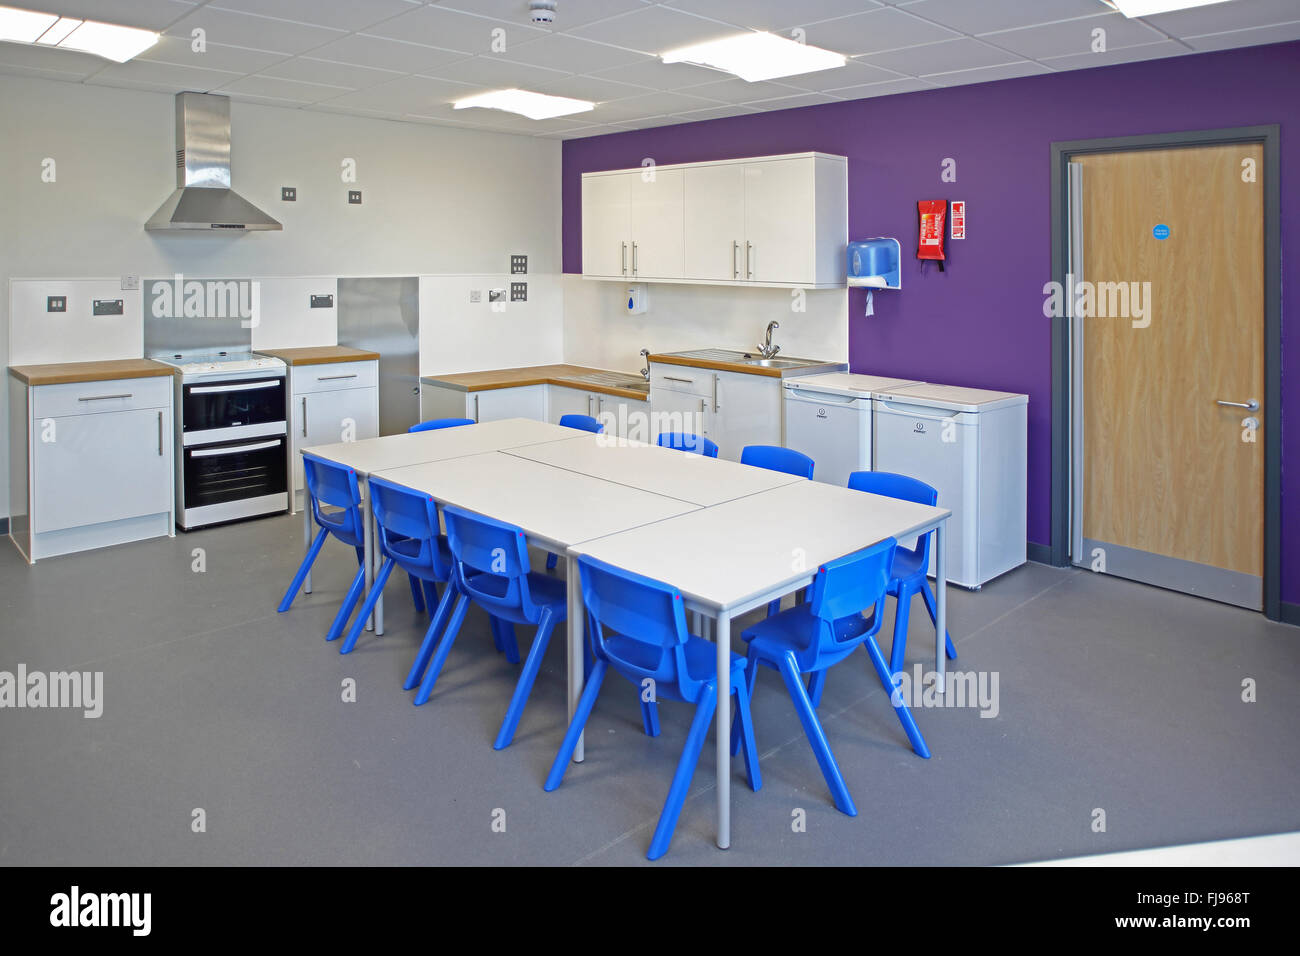 Ein Hauswirtschaft Klassenzimmer in eine neue britische Grundschule. Zeigt Tabelle, Herde und Waschmaschinen Stockfoto